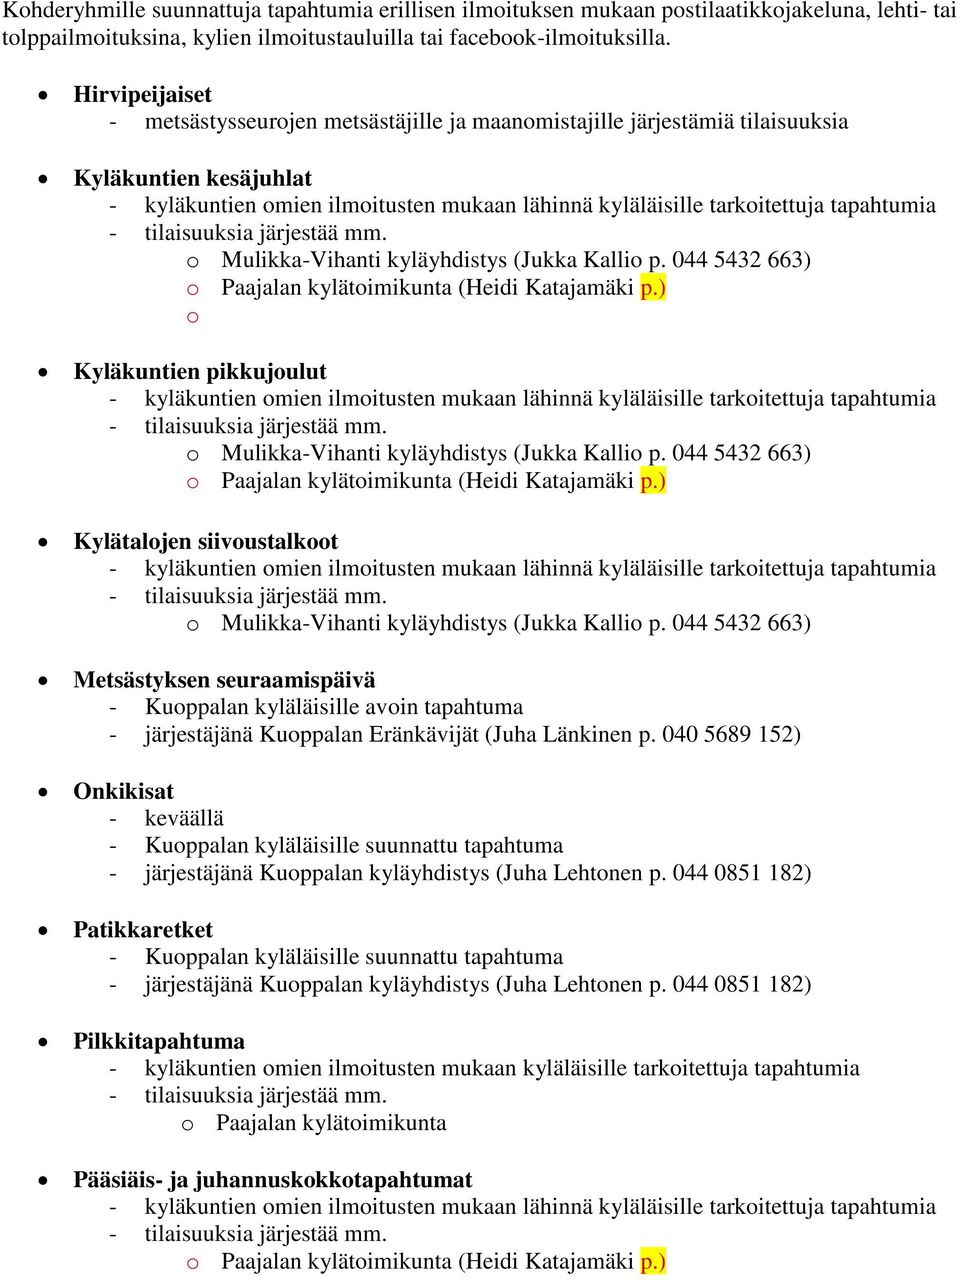 tapahtumia - tilaisuuksia järjestää mm. o Mulikka-Vihanti kyläyhdistys (Jukka Kallio p. 044 5432 663) o Paajalan kylätoimikunta (Heidi Katajamäki p.